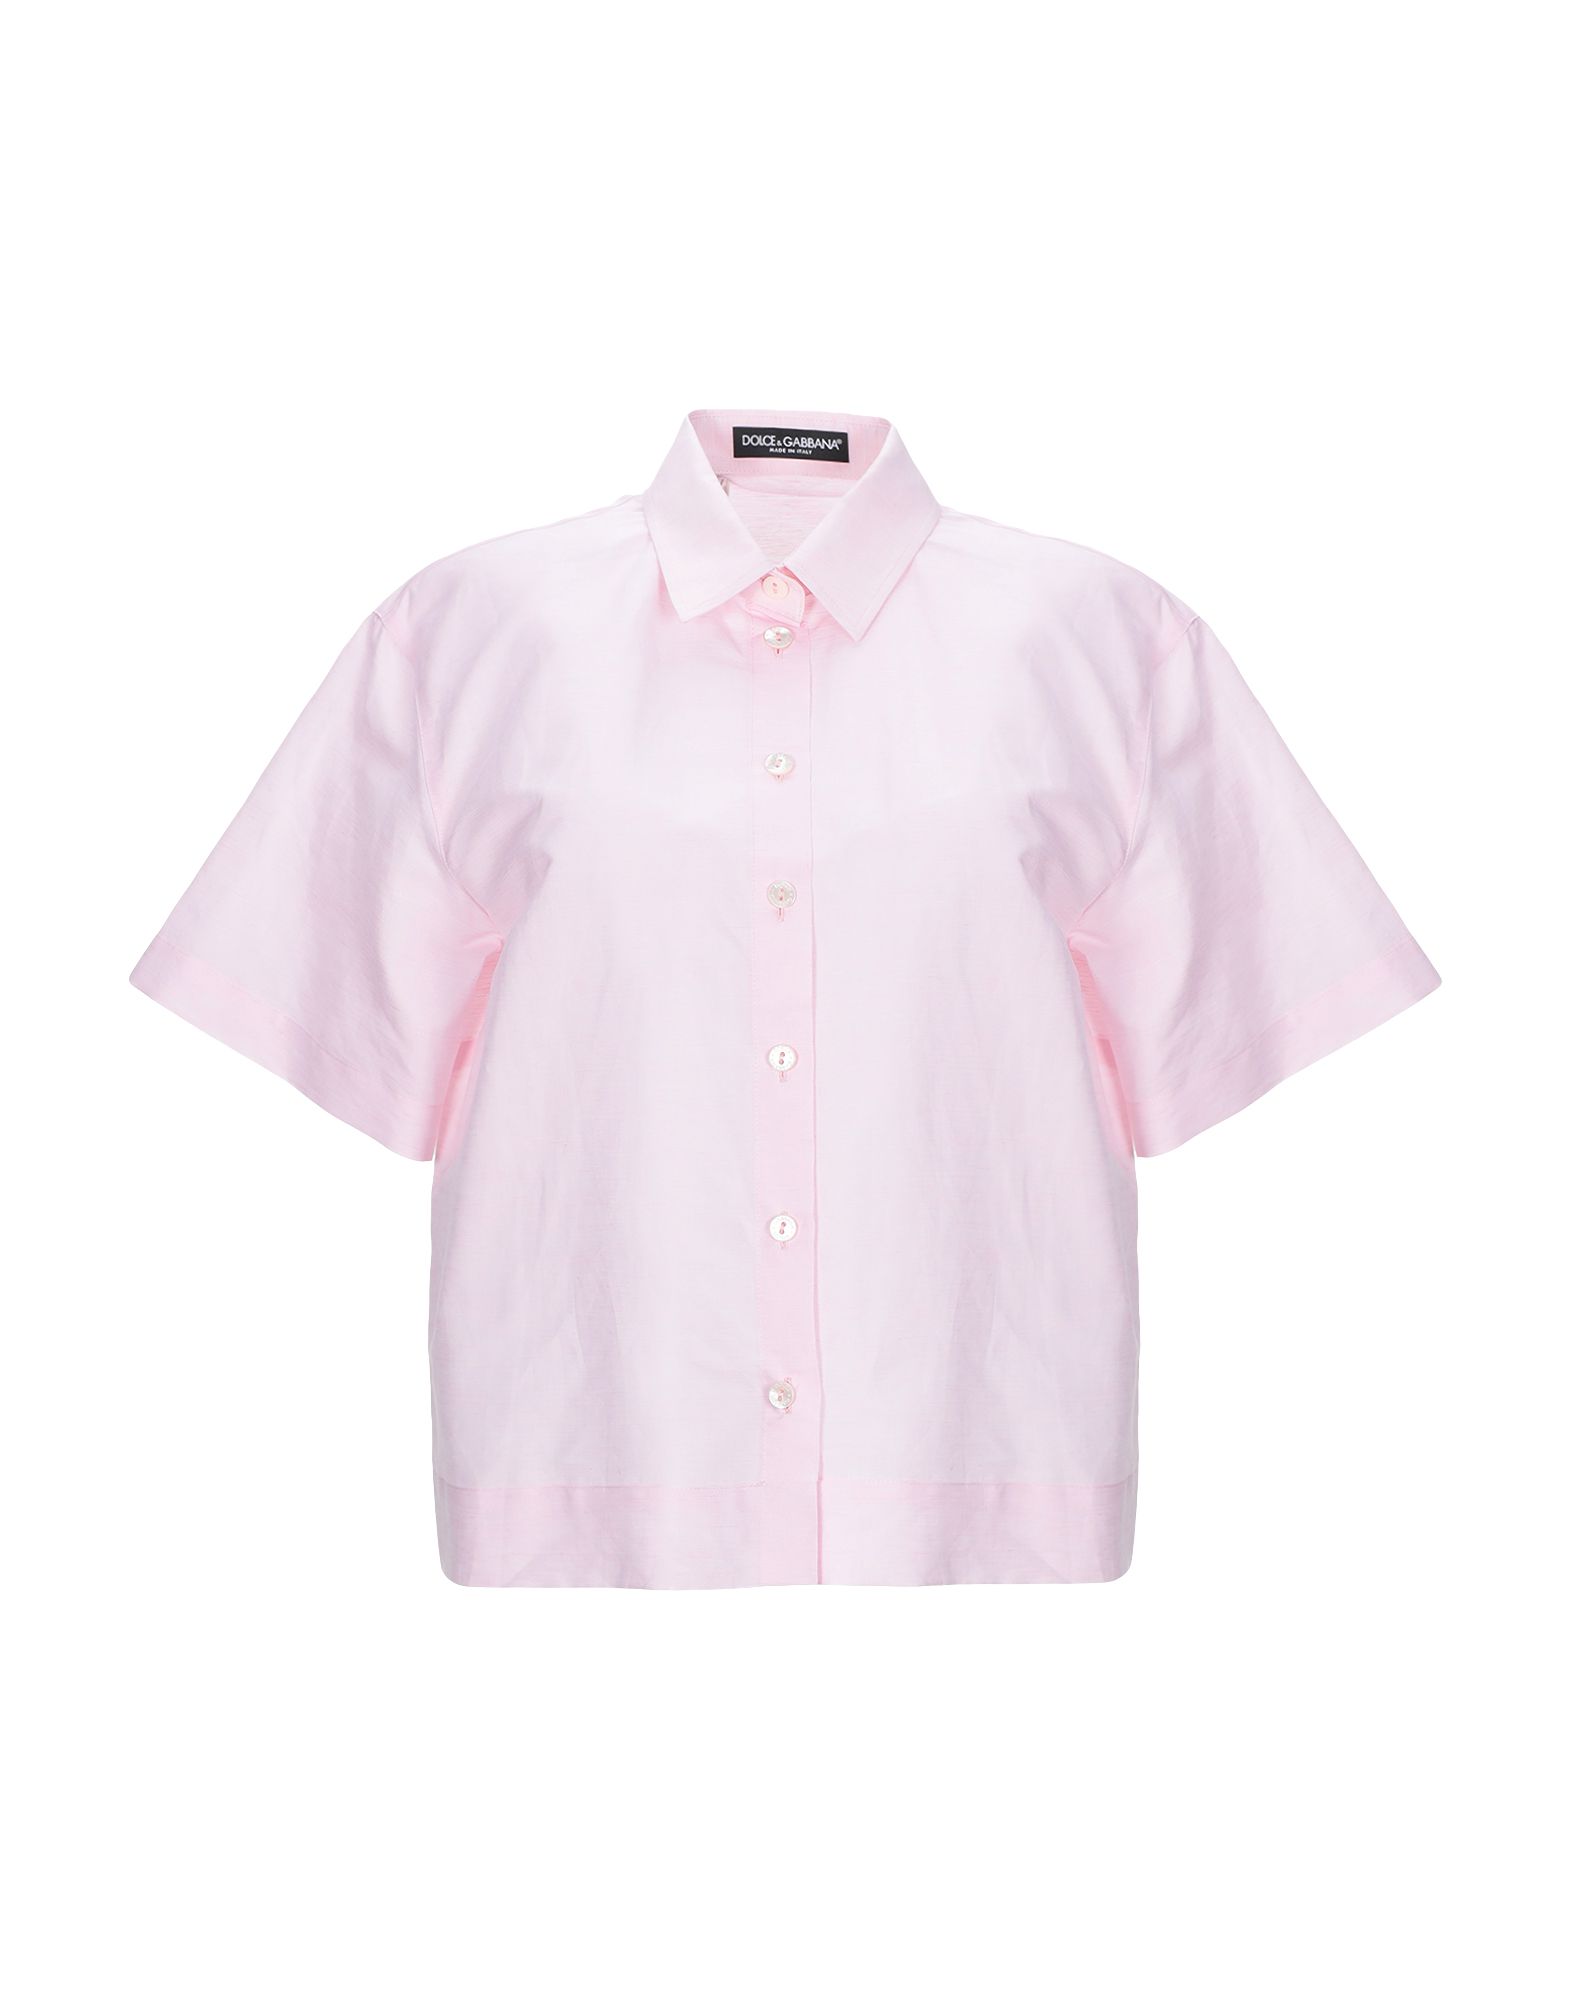 DOLCE & GABBANA Linen shirt,38835888EA 3